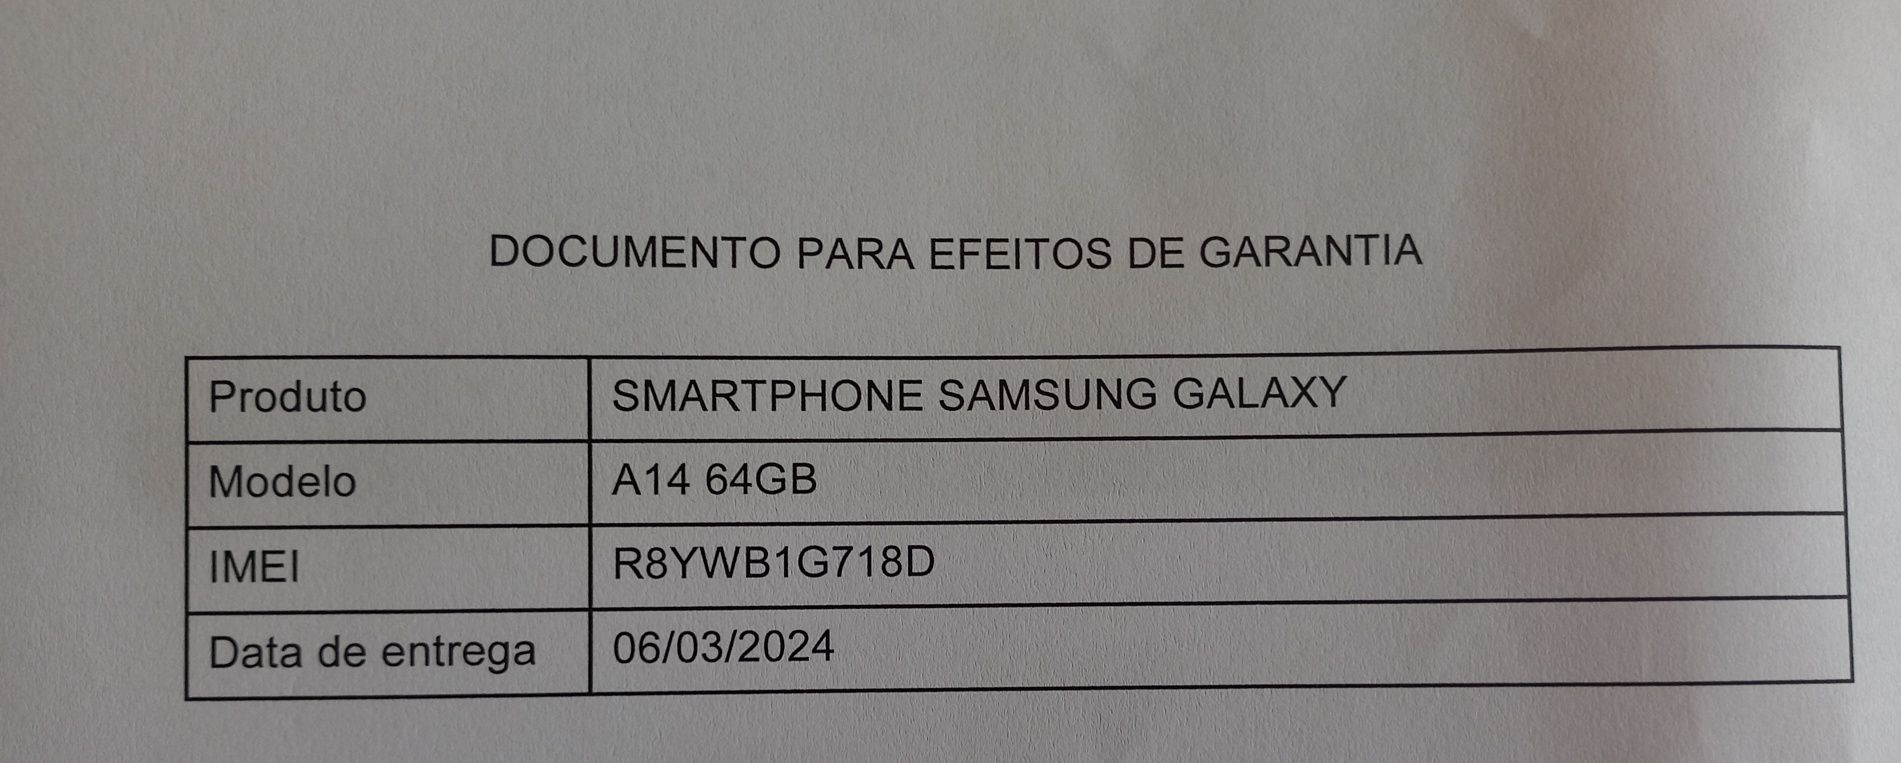 Telemóvel Samsung Galaxy A14 64GB 4G